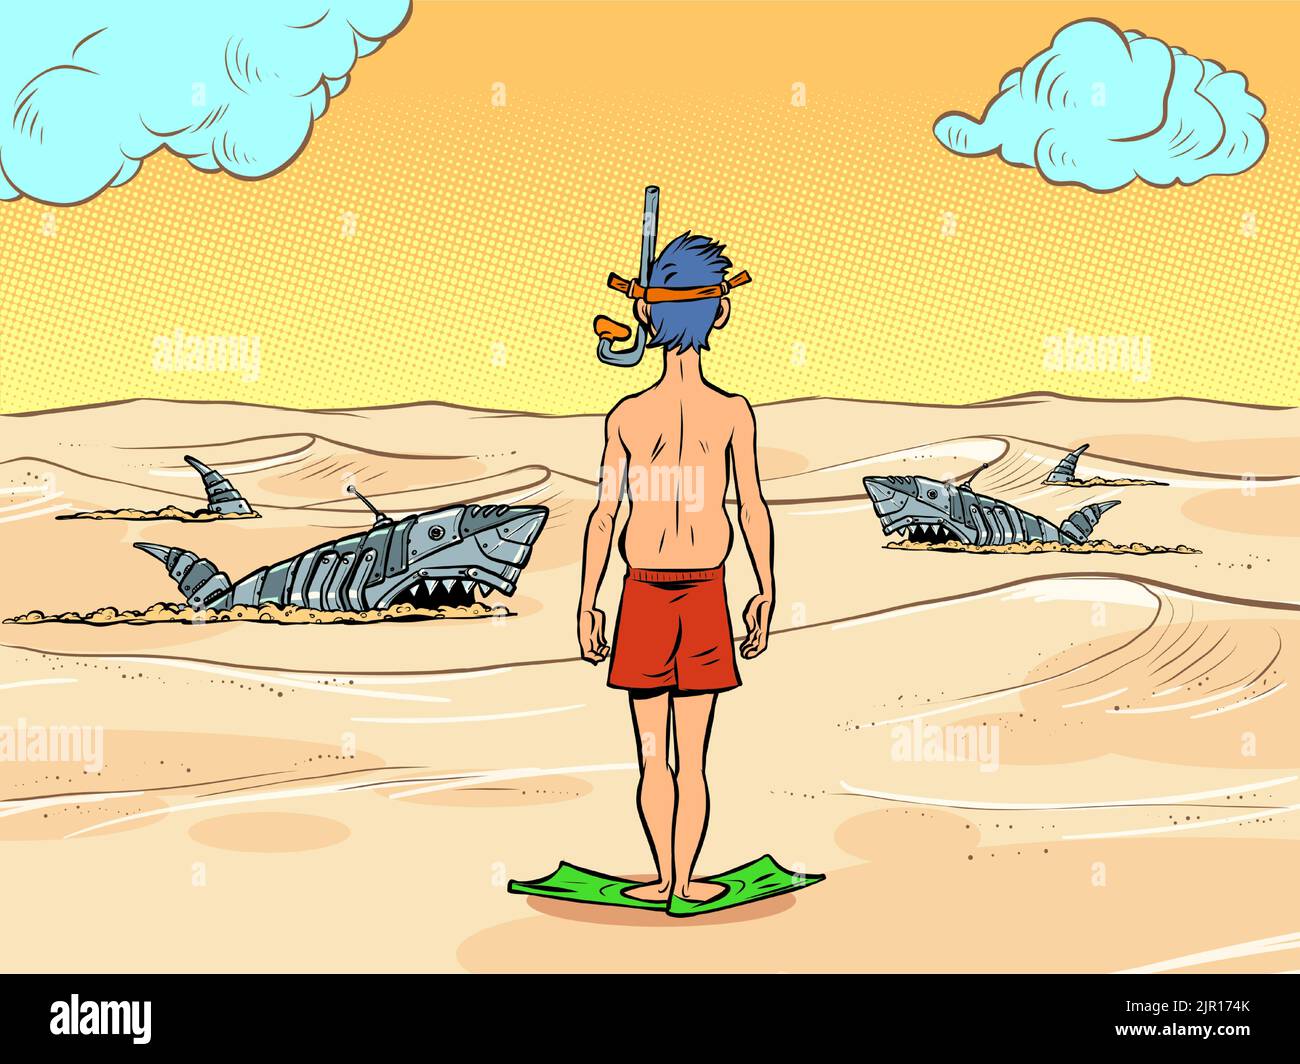 Handgezeichnete Vektorgrafik einer Haiflosse in den Meereswellen  Stock-Vektorgrafik - Alamy